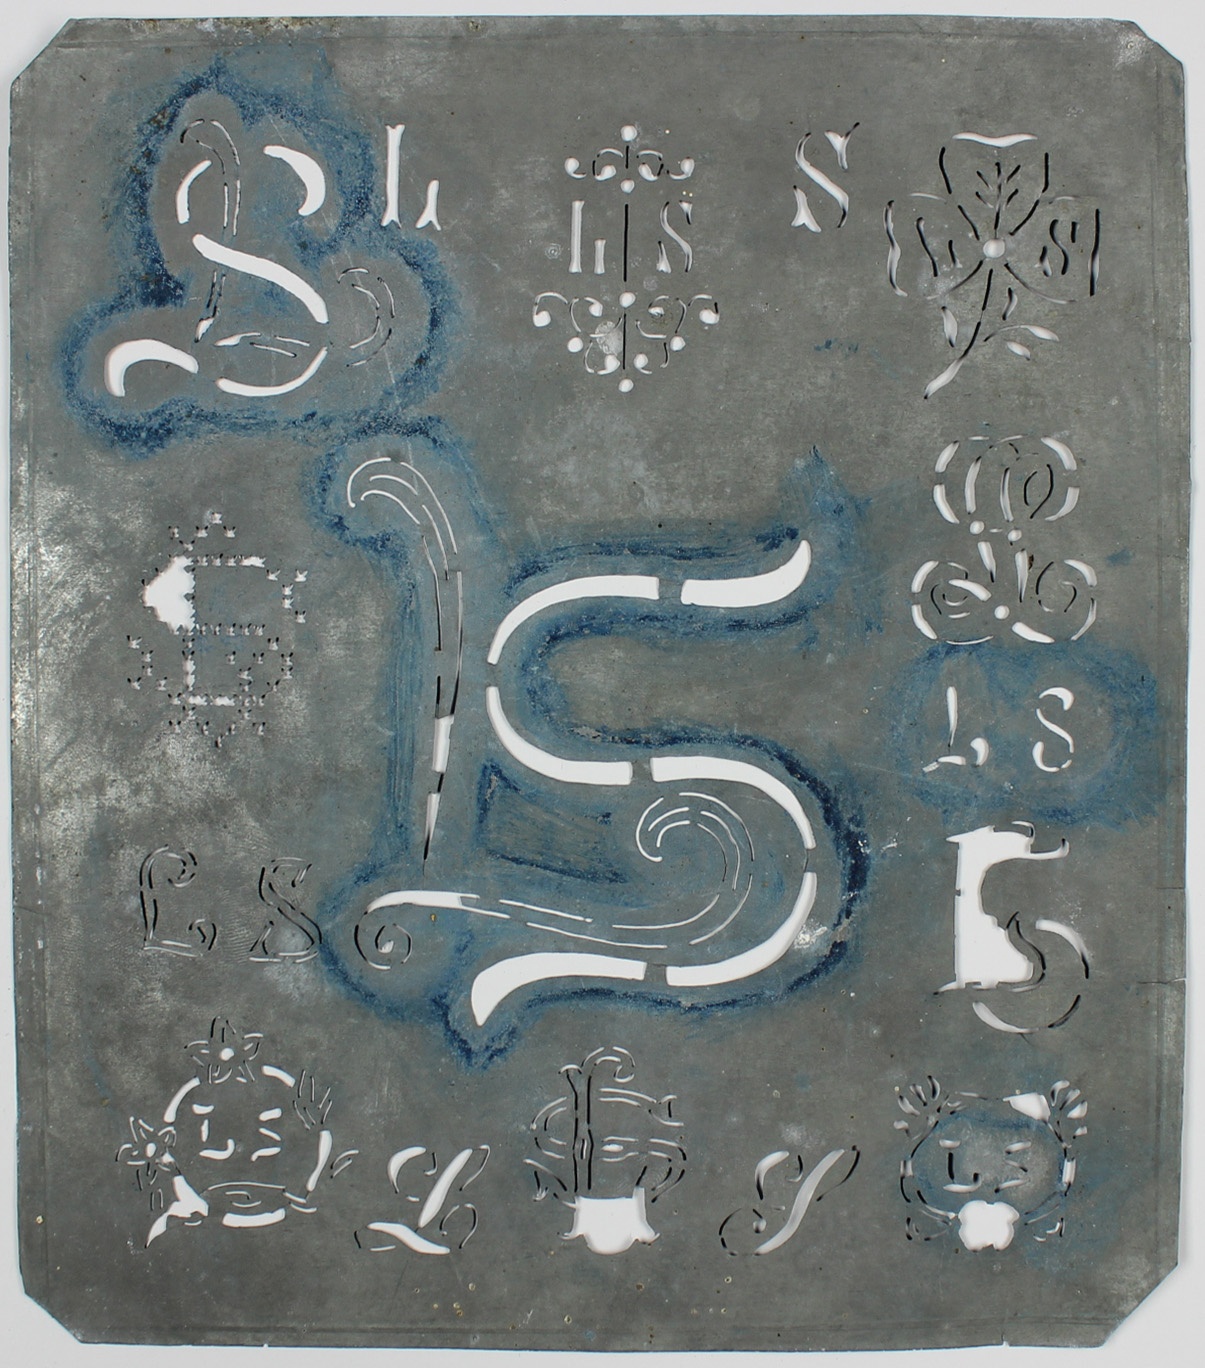 Stickmusterschablone, Blech, verschiedene Blumen- und Buchstabenmotive (Museum Wolmirstedt RR-F)